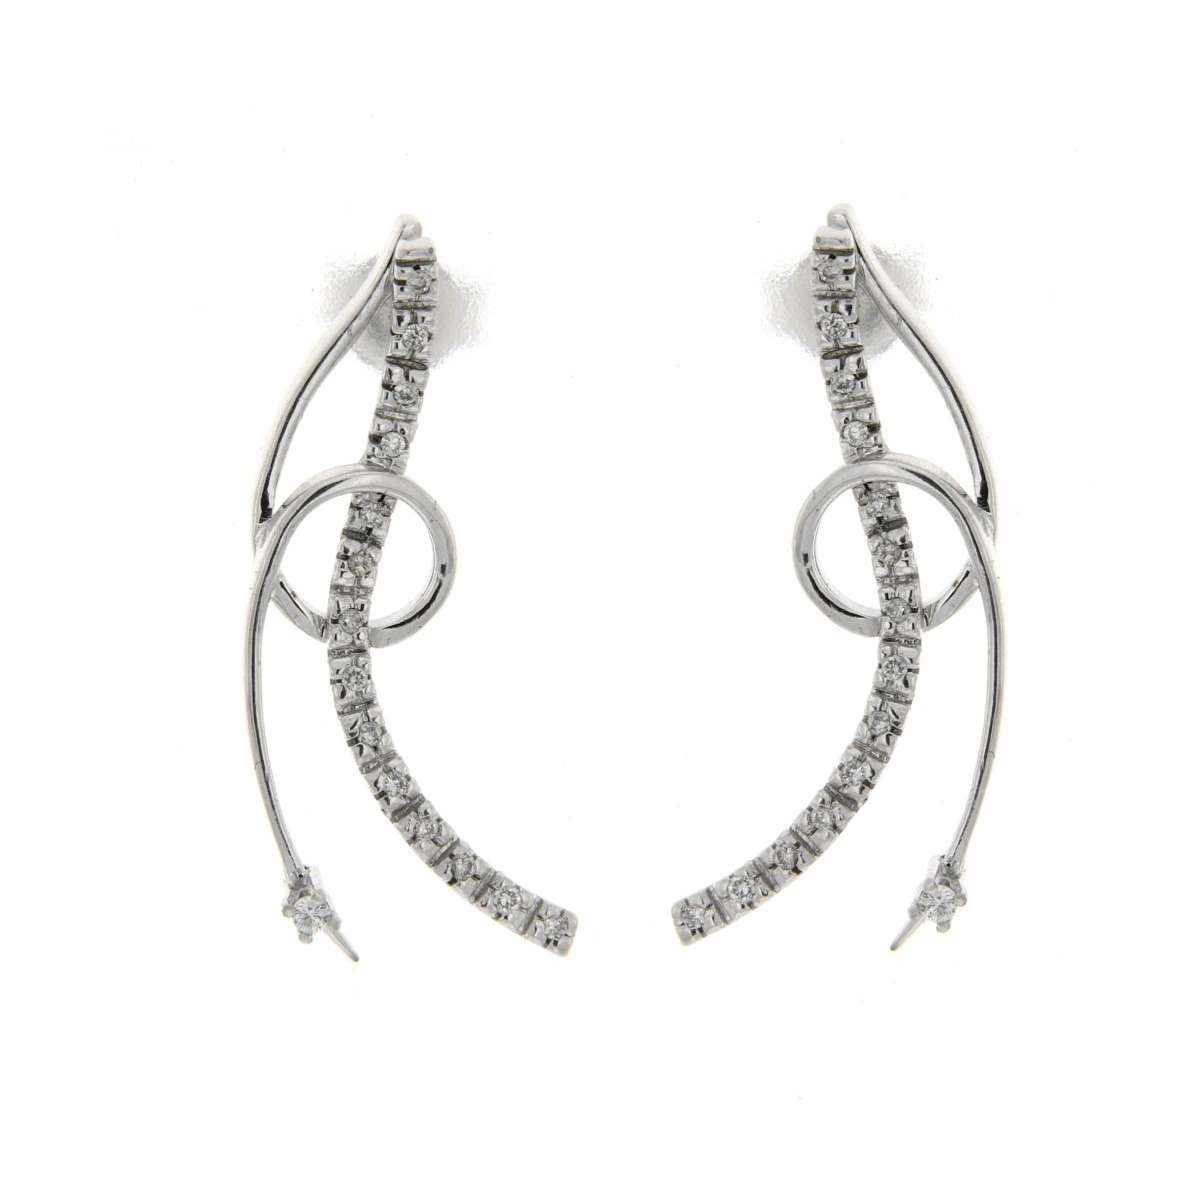 Fancy curl earrings 0.16 carats diamonds G-VS1